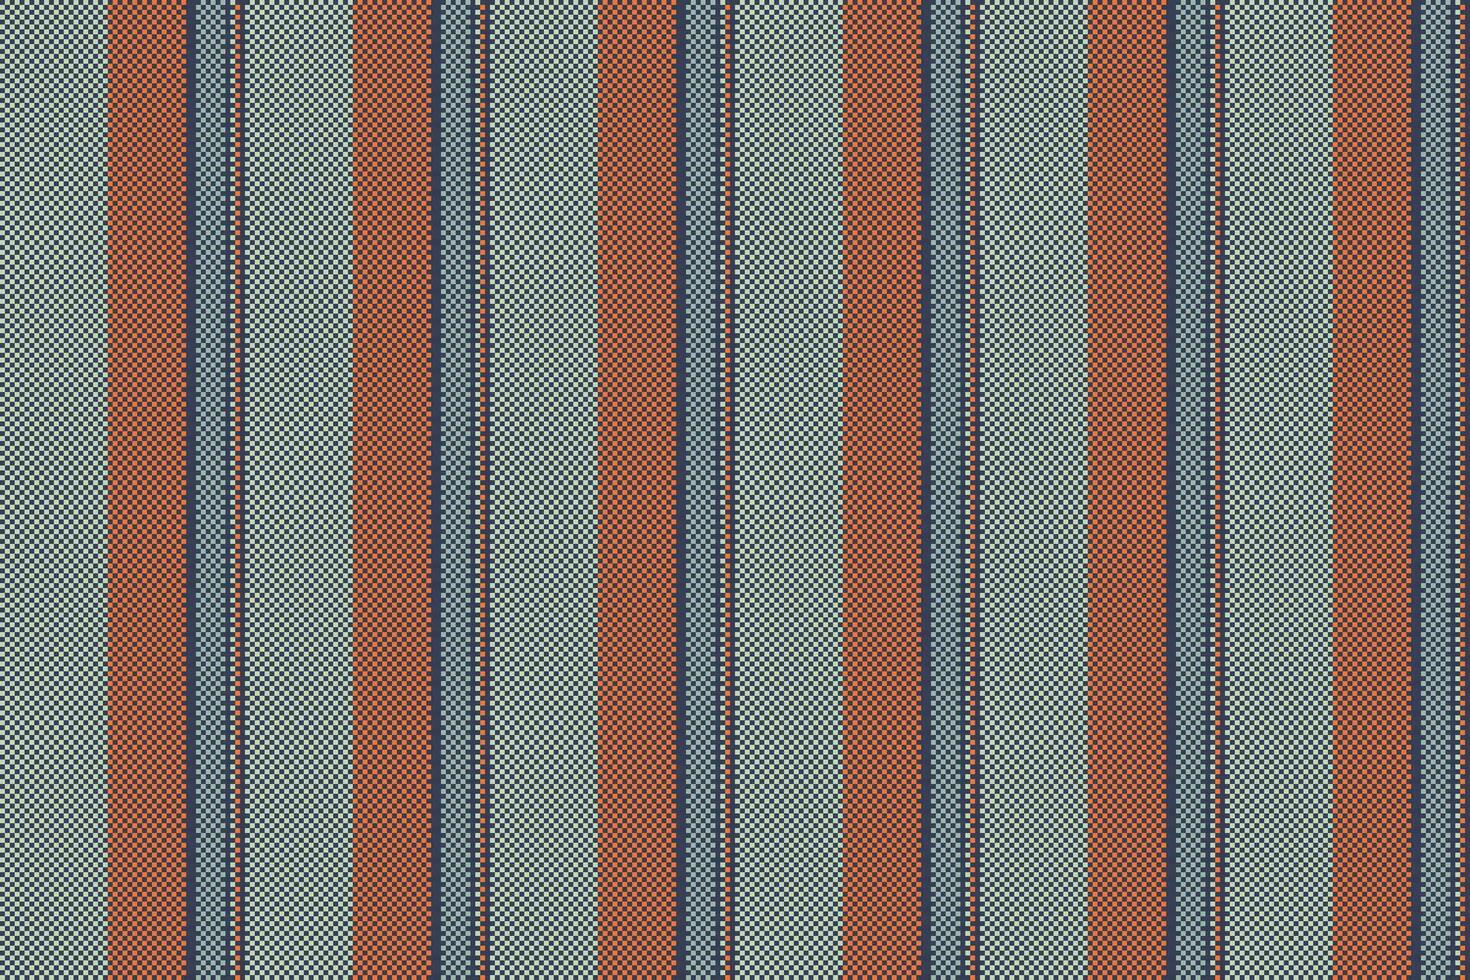 kleding stof achtergrond lijnen van textiel vector structuur met een patroon streep naadloos verticaal.